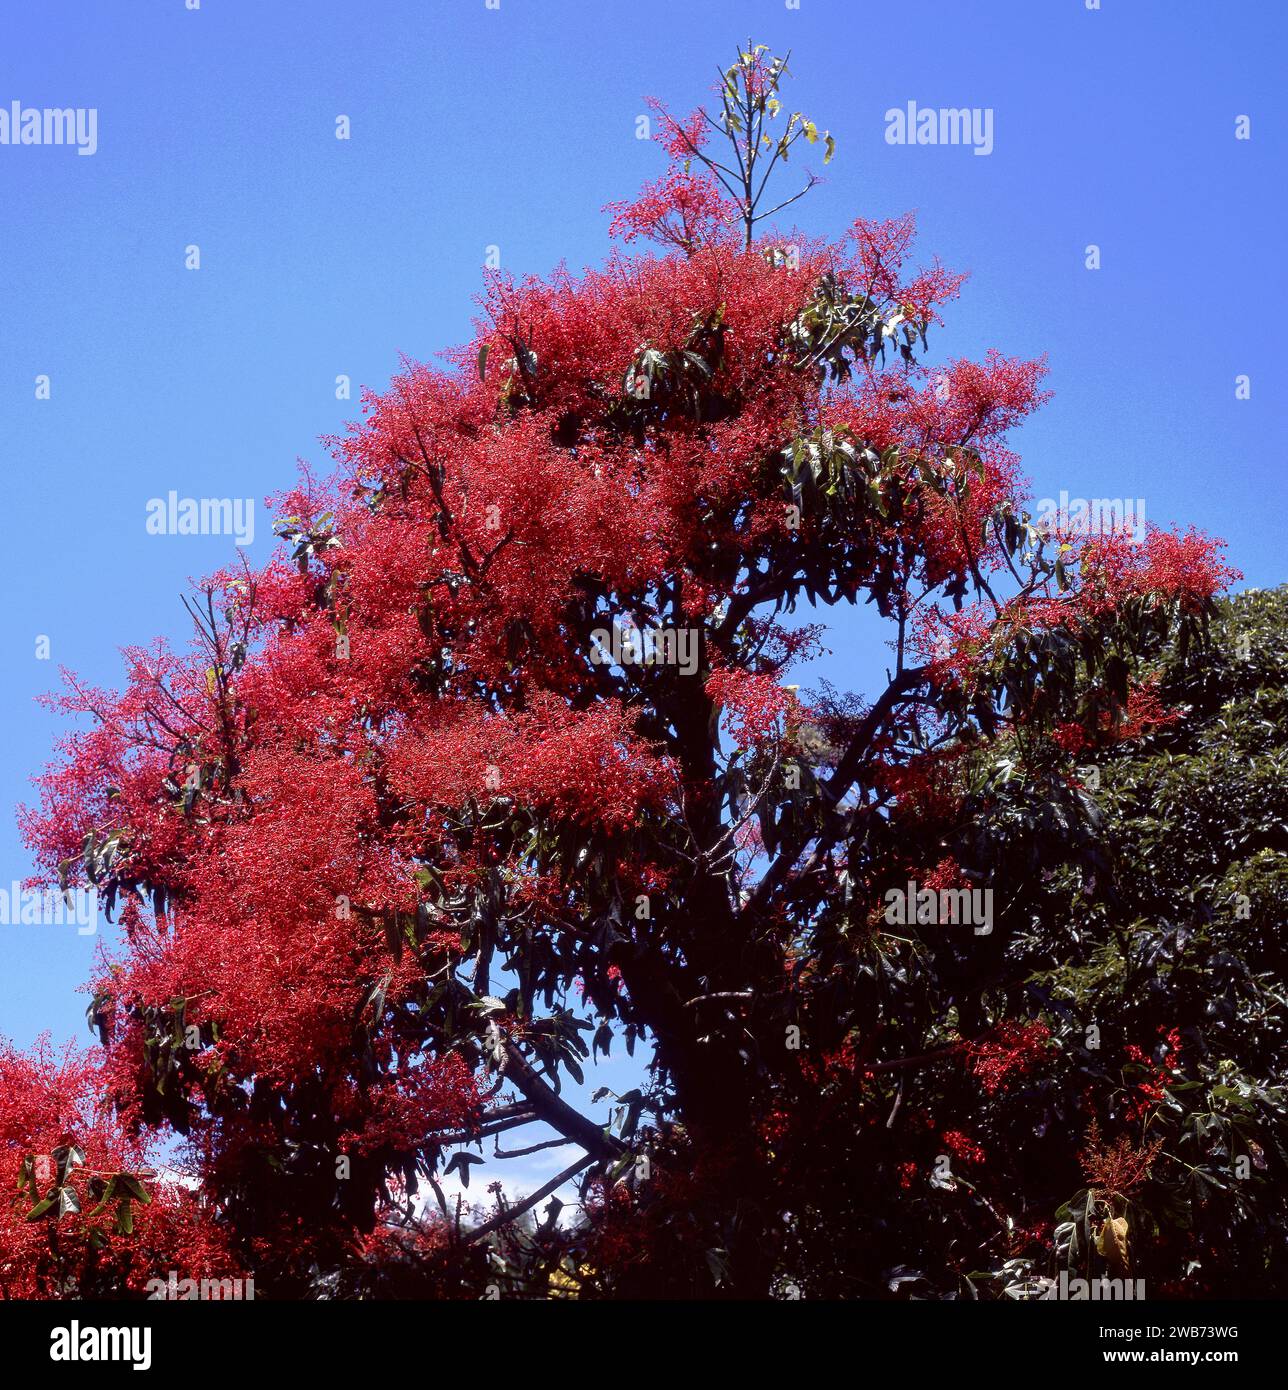 Illawarra Flame Tree (Brachychiton acerifolius) against blue sky. Stock Photo